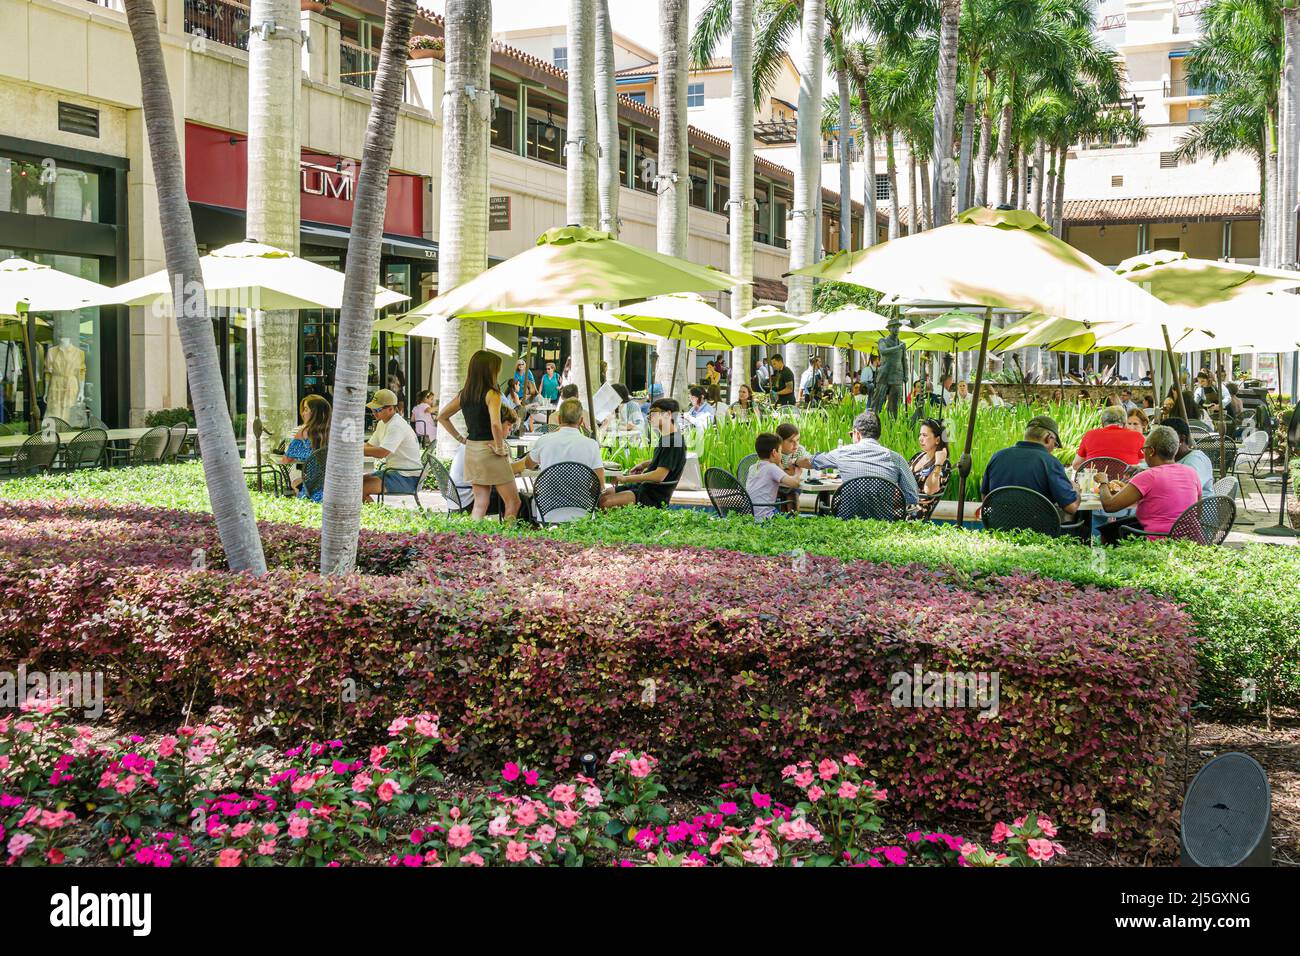 Miami Florida Coral Gables Shops at Merrick Park esclusivo centro commerciale all'aperto, Sawa Restaurant & Lounge, ombrelloni da pranzo all'aperto Foto Stock